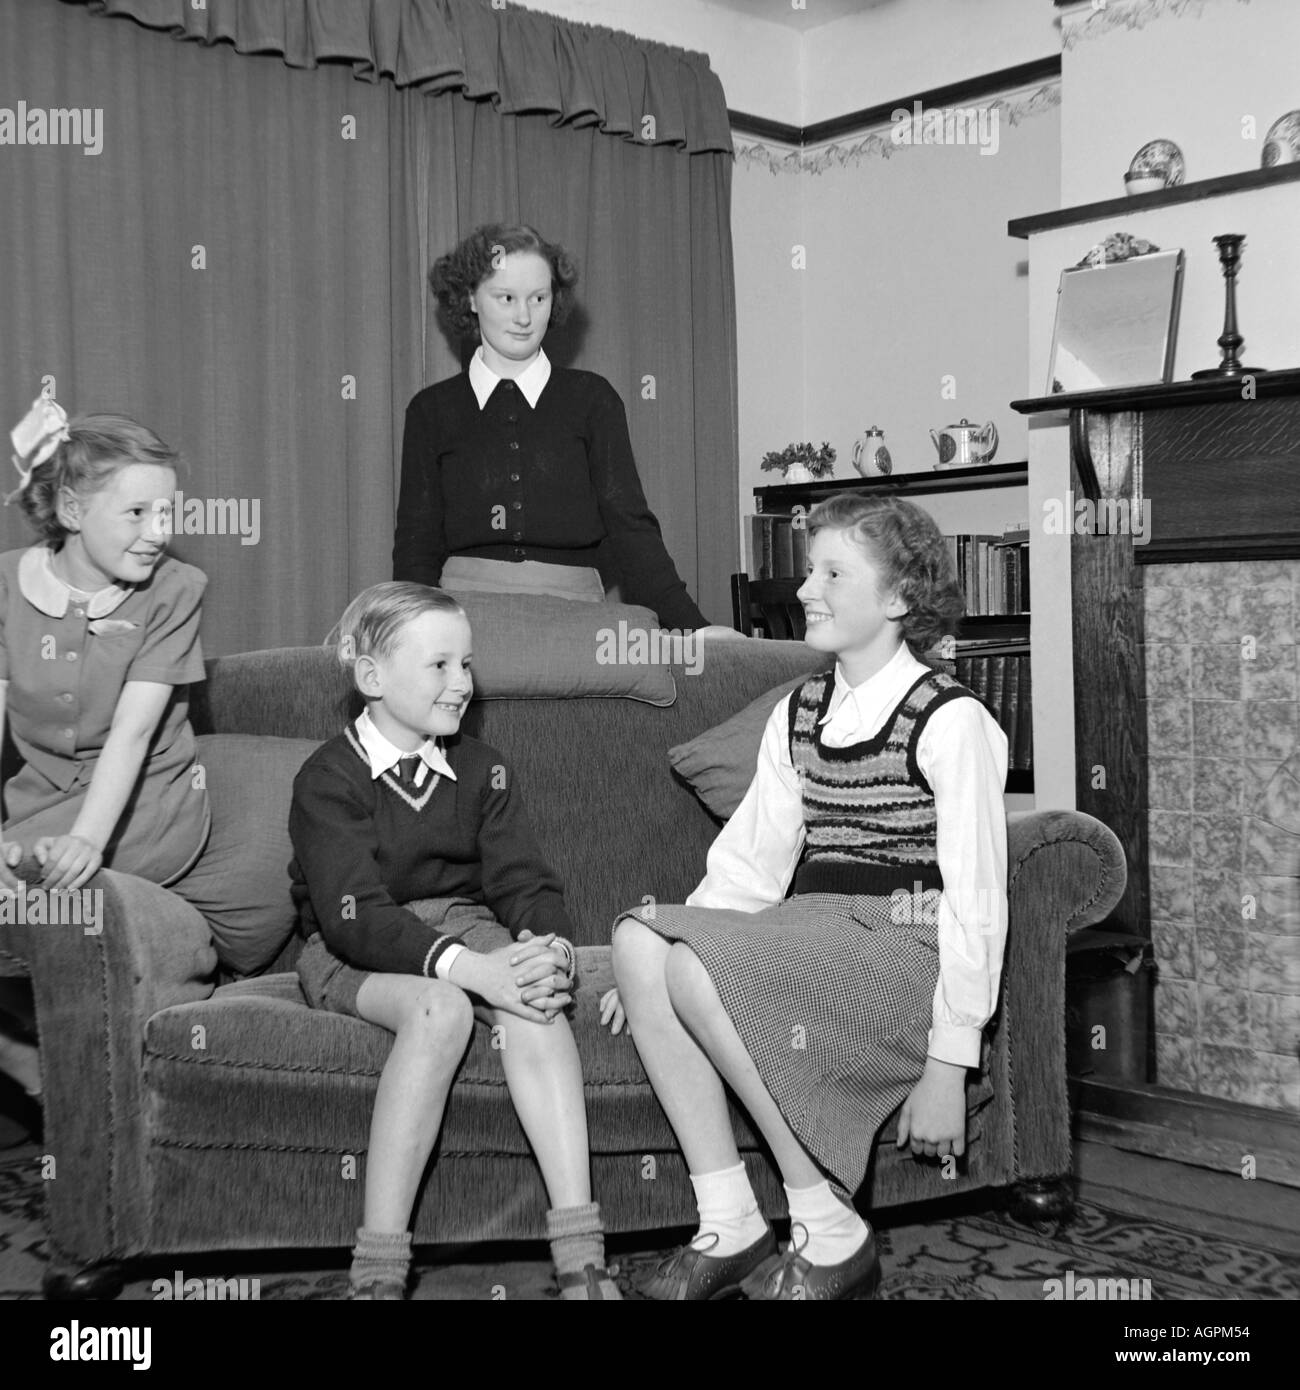 Vecchia famiglia vintage fotografia istantanea di tre giovani ragazze e giovani BOY nel soggiorno del 1950 circa Foto Stock